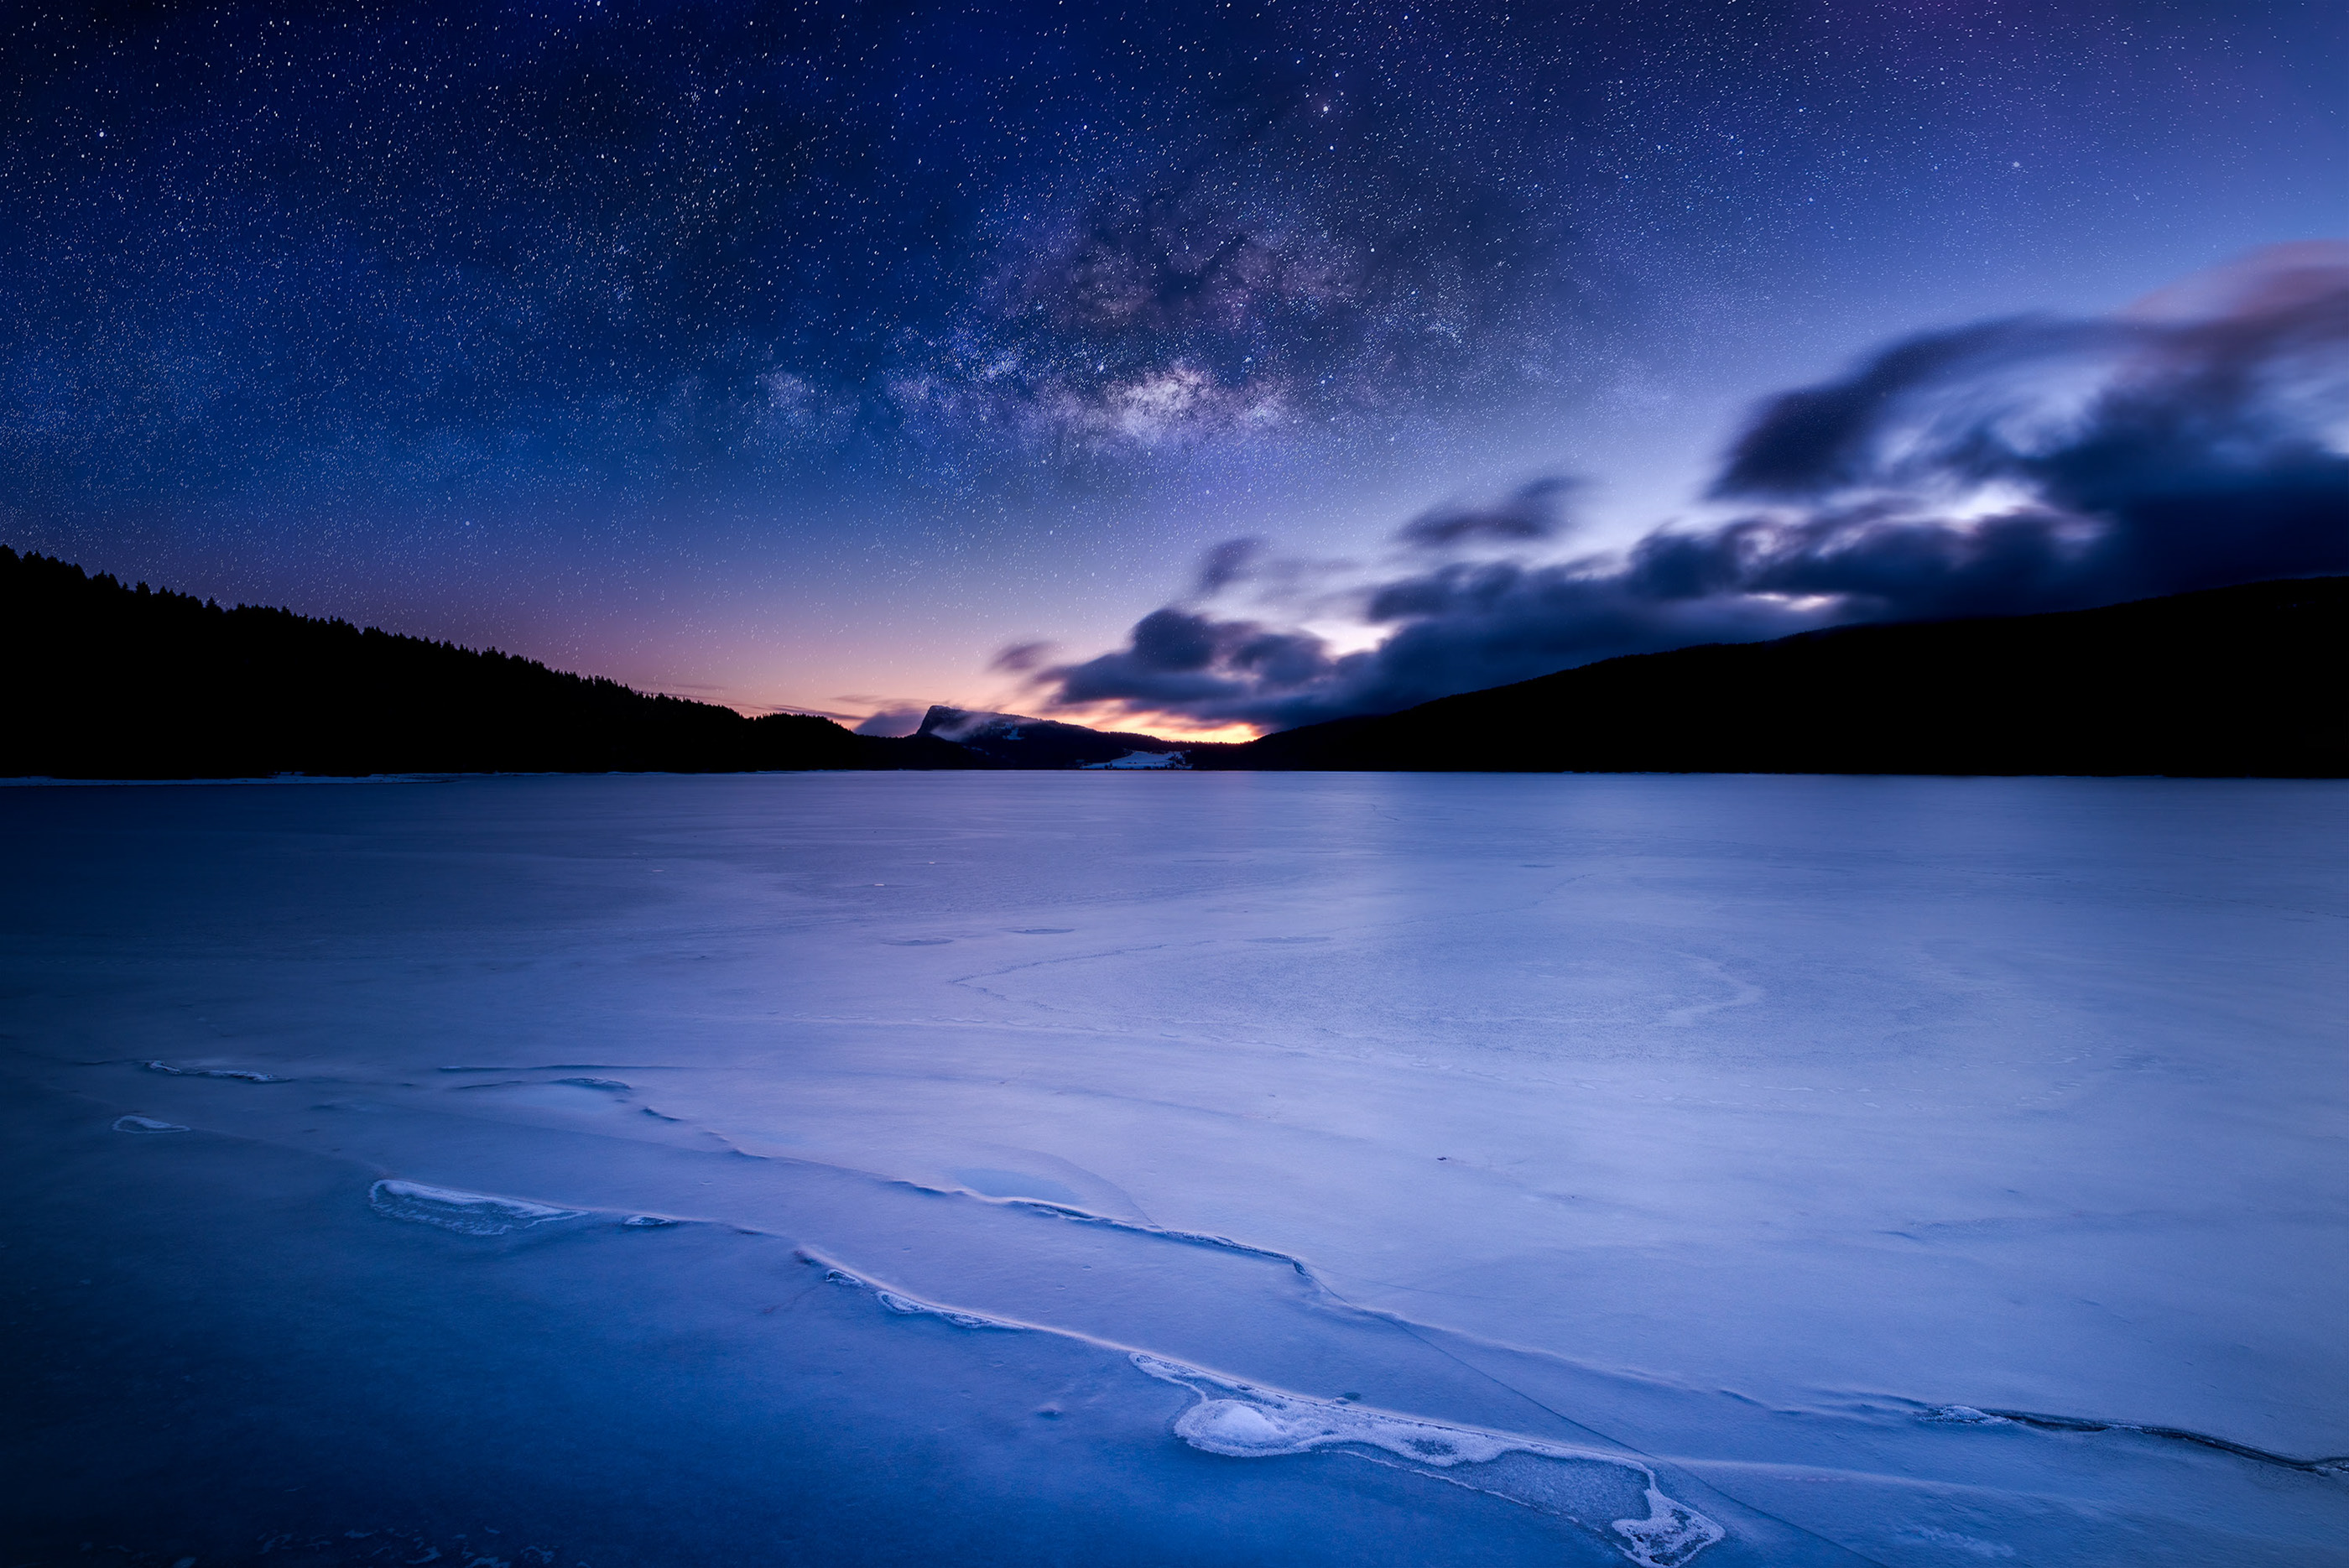 Galaxy Landscape Nature Photography Sunrise Switzerland Winter Lake 2800x1869